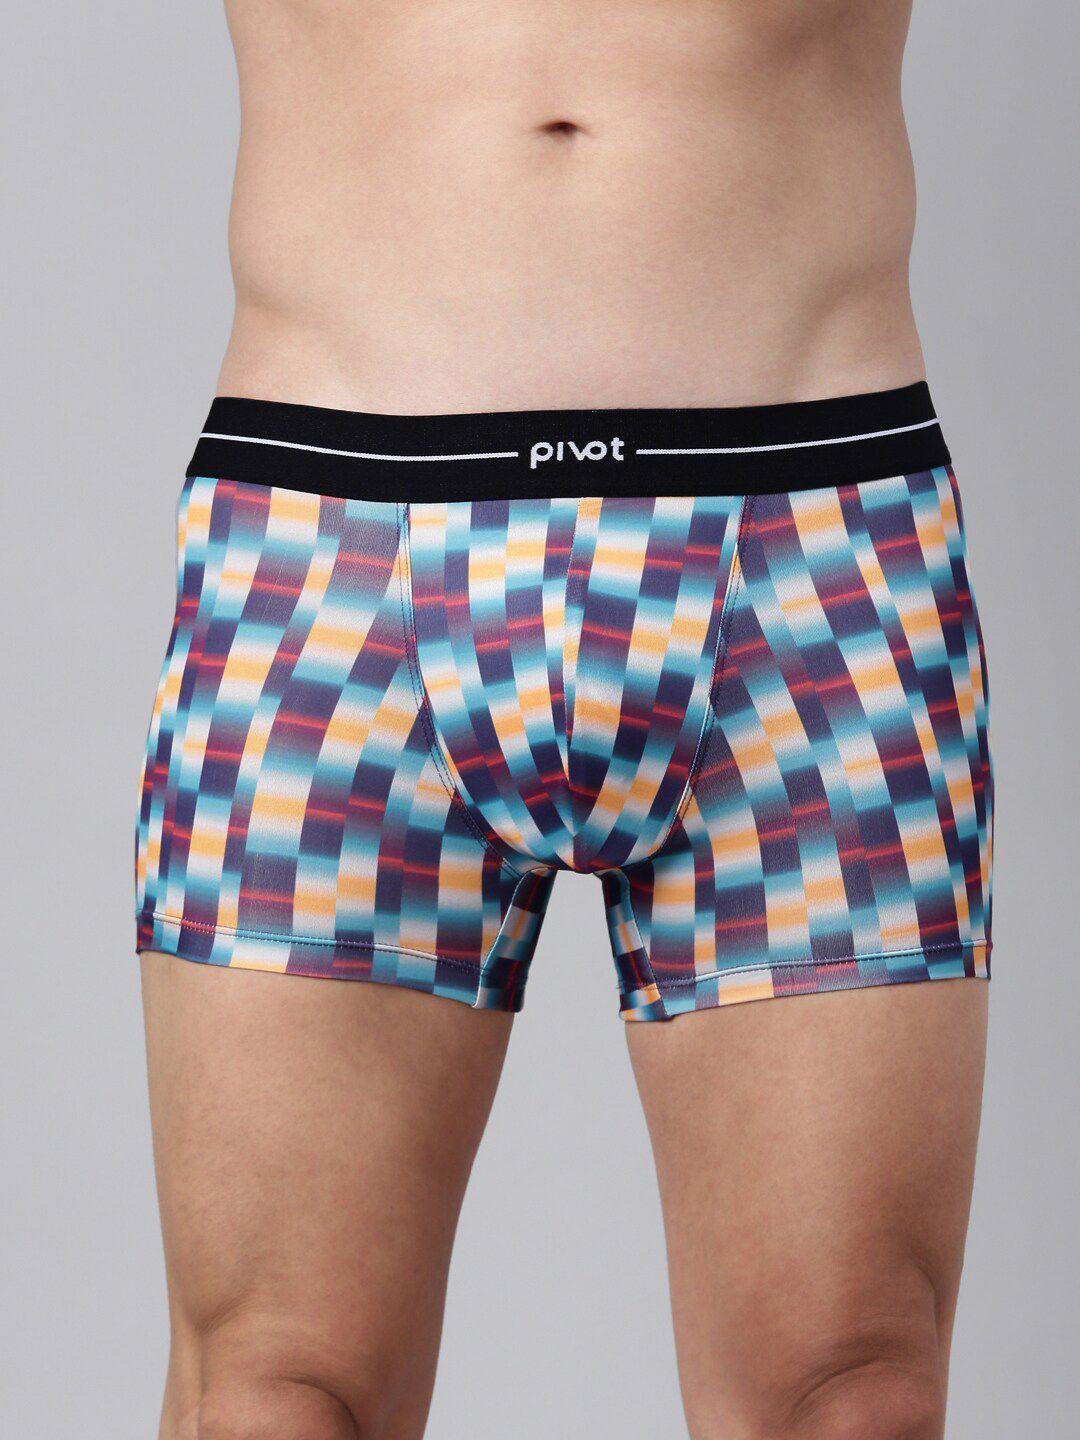 pivot men geometric printed trunks